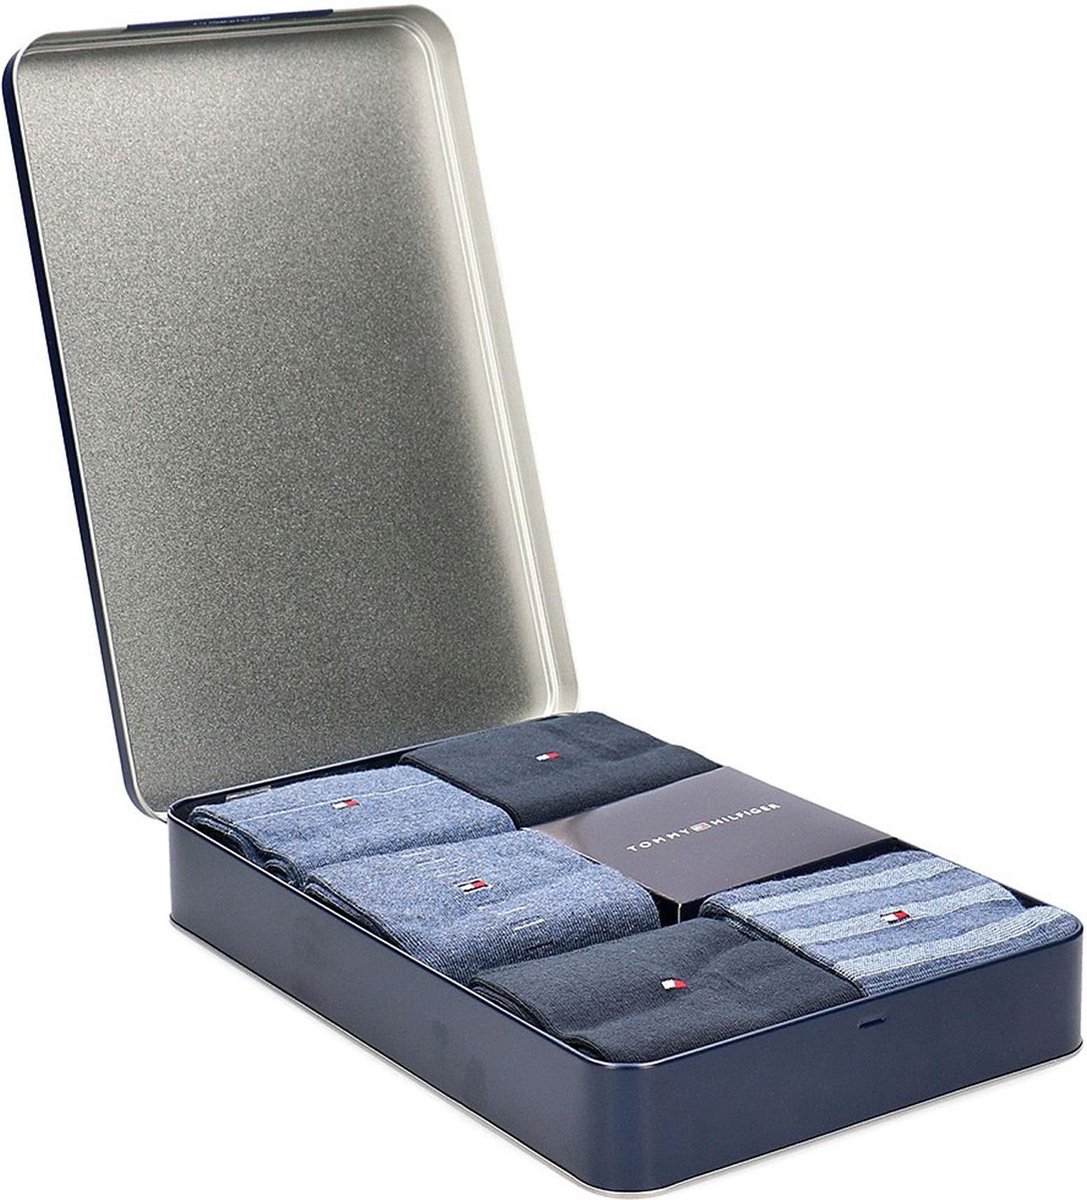 Tommy Hilfiger Sokken (regular) - Maat 43-46 - Mannen - blauw/grijs 5-pack  in giftbox | bol.com